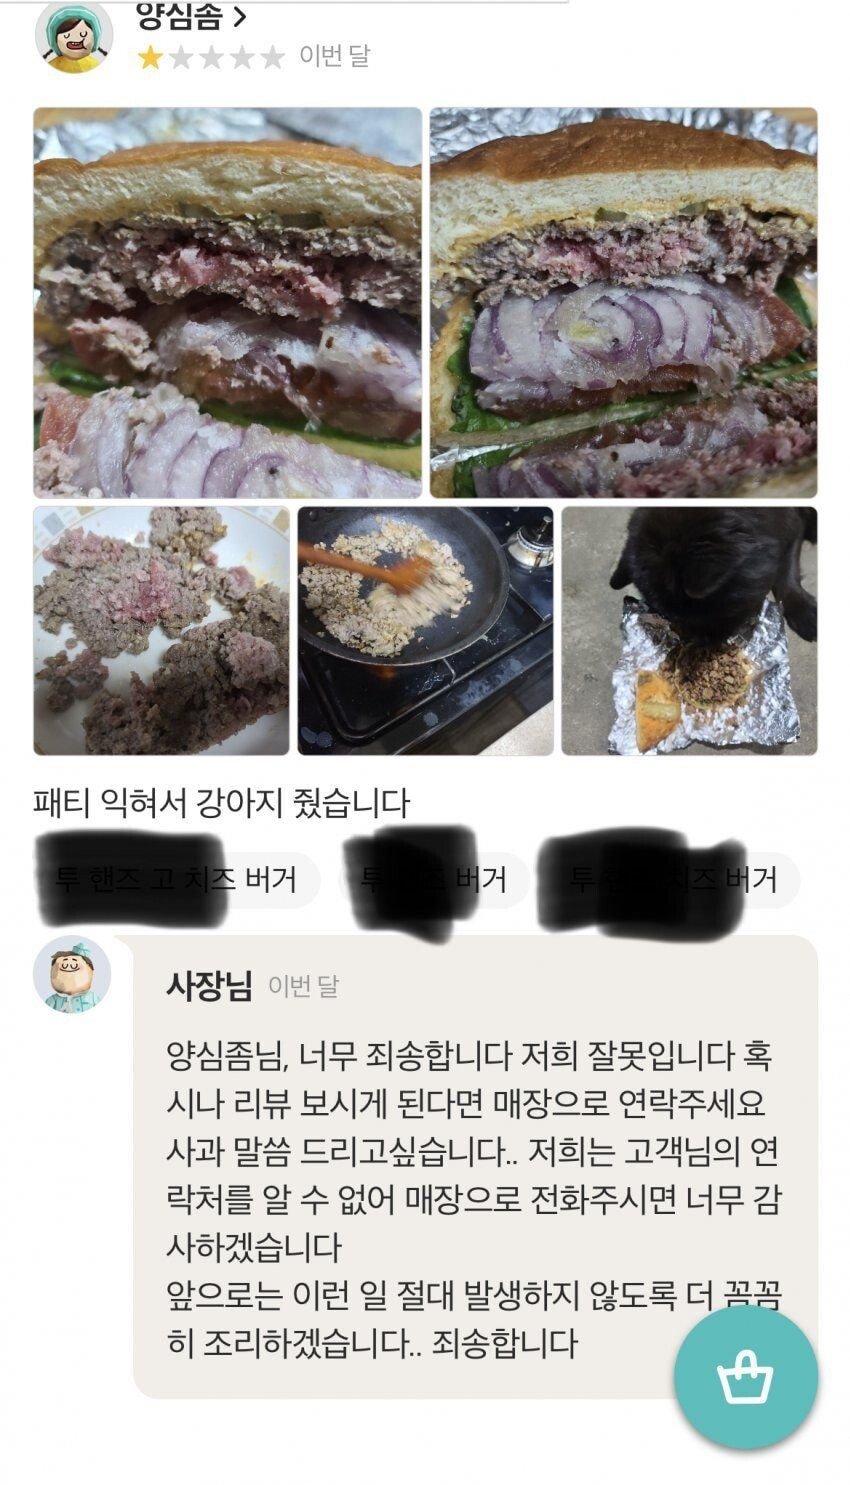 배민 리뷰 개밥 논란